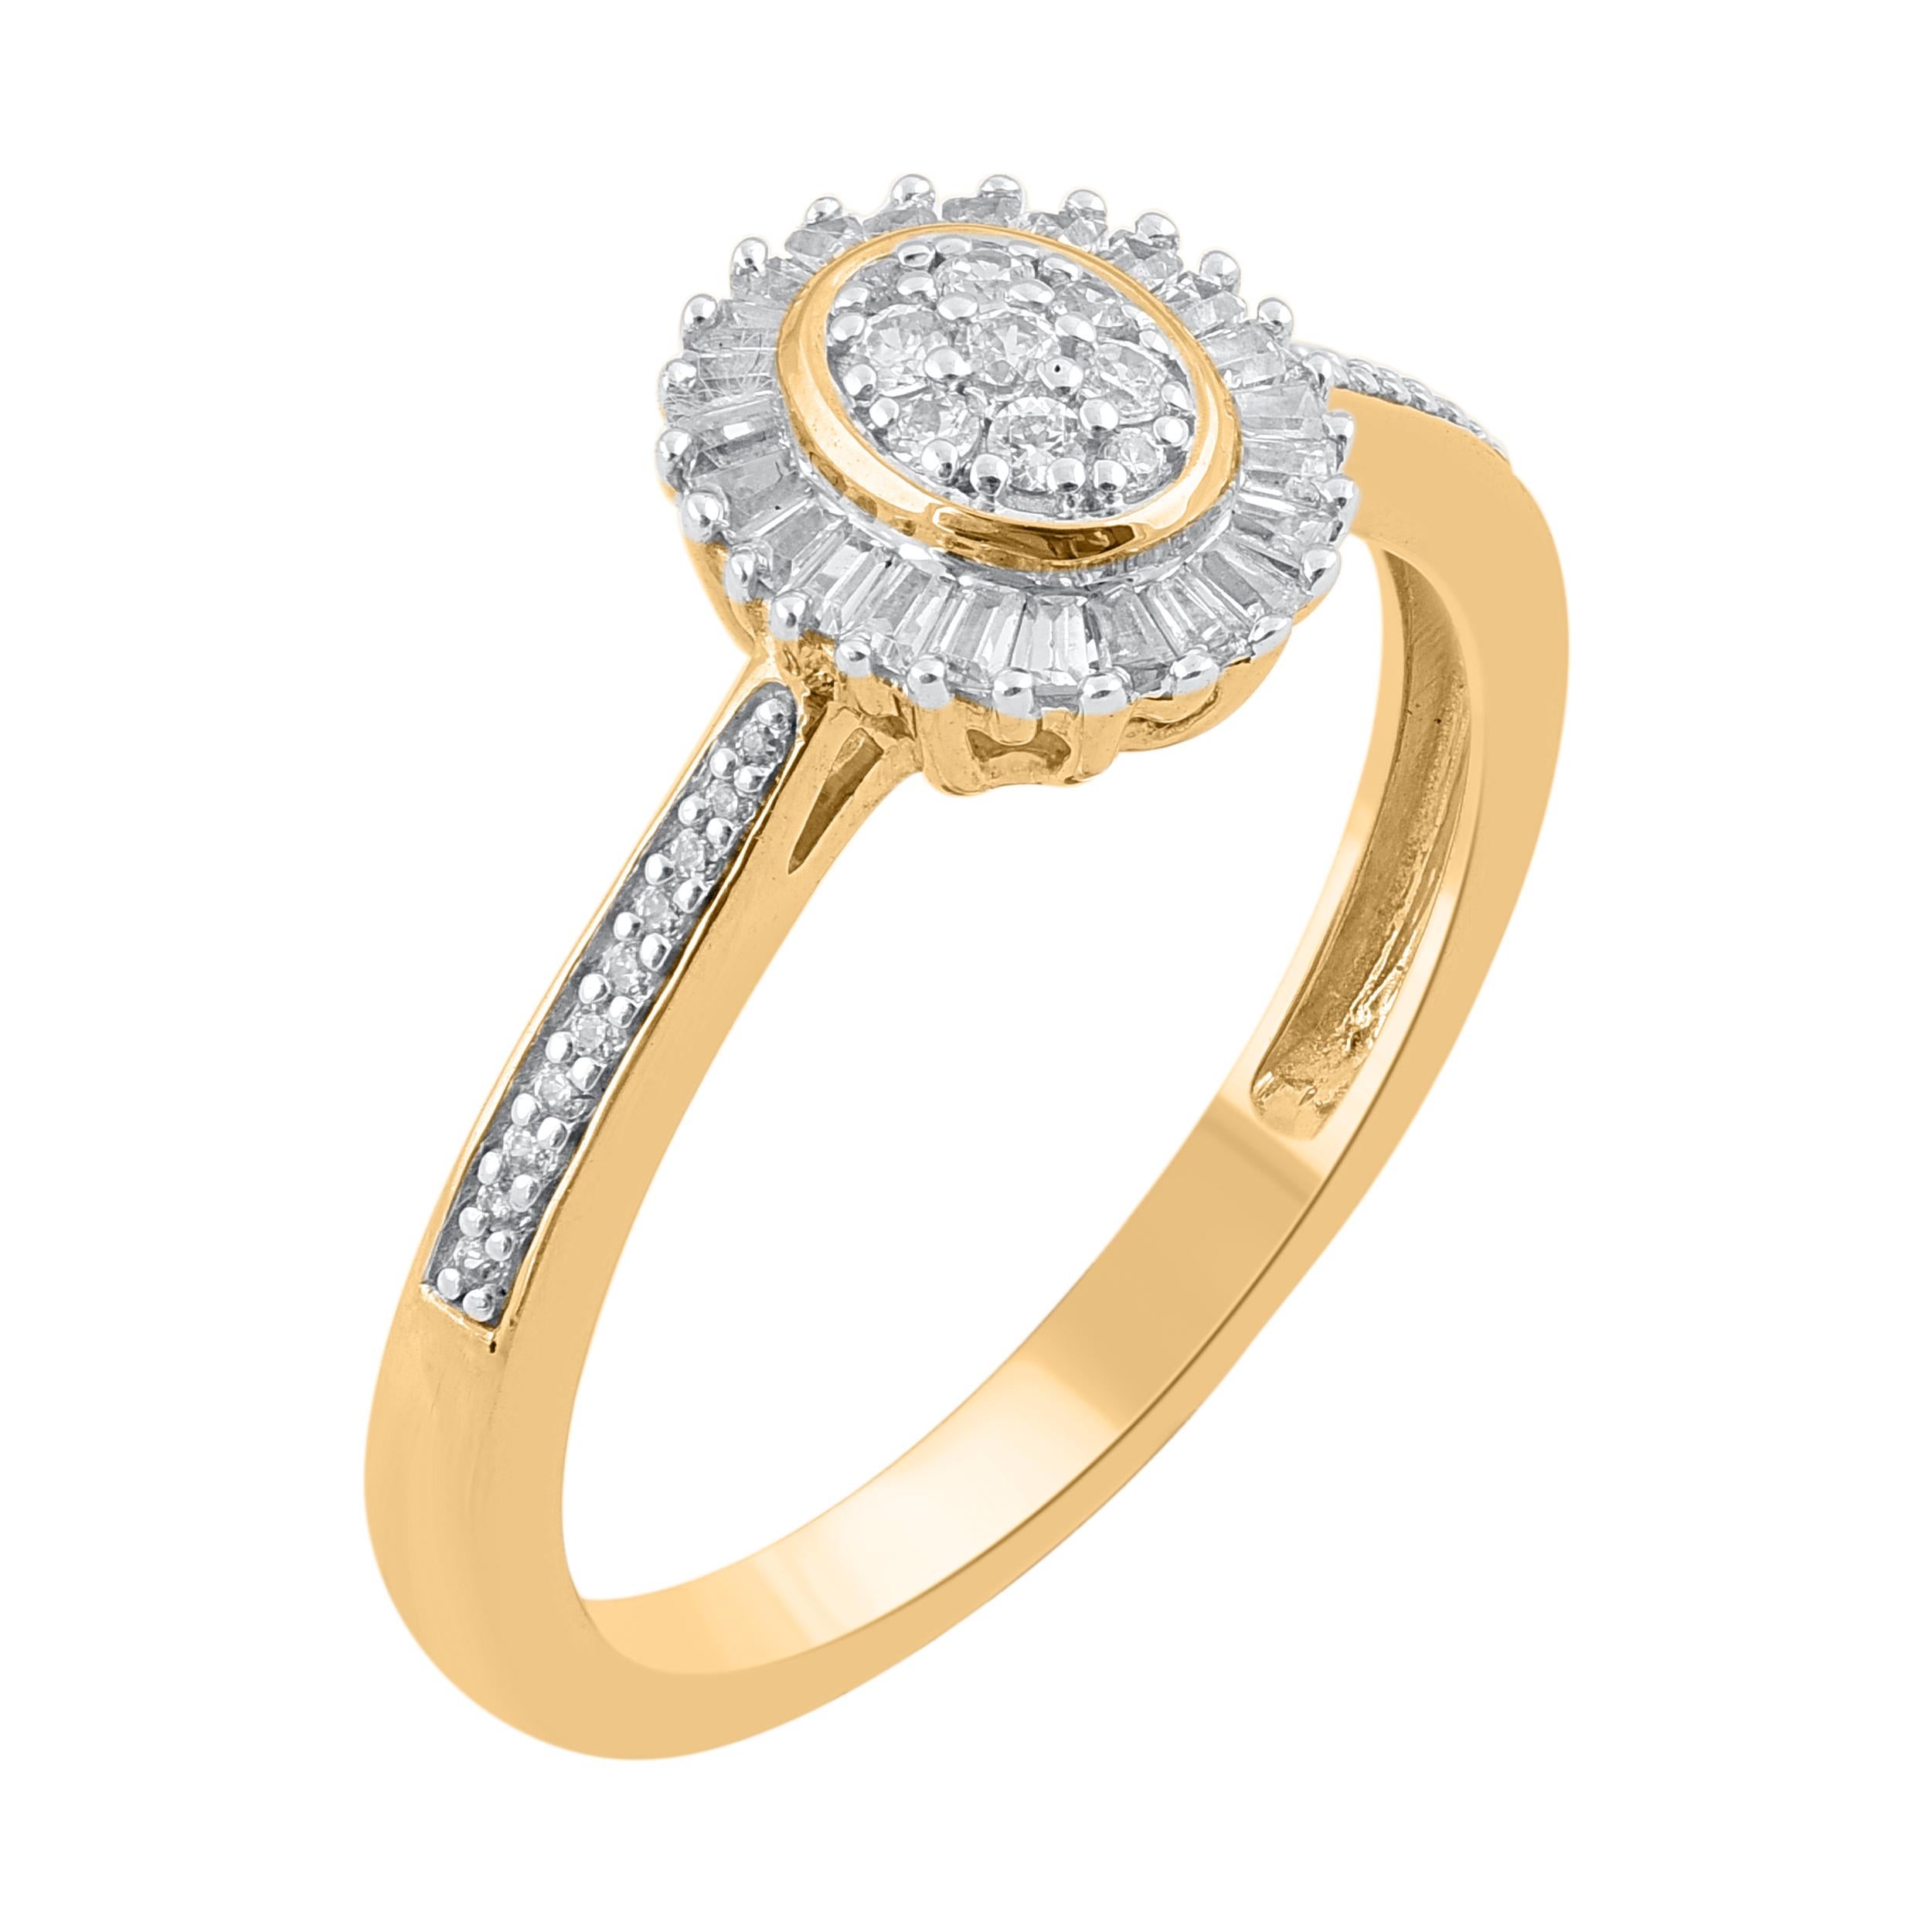 Verleihen Sie diesem diamantenen Verlobungsring einen Hauch von Eleganz. Dieser Ring ist wunderschön aus 18 Karat Gelbgold gefertigt und mit 53 Diamanten im Einzel-, Brillant- und Baguetteschliff in Pflaster- und Kanalfassung besetzt. Das